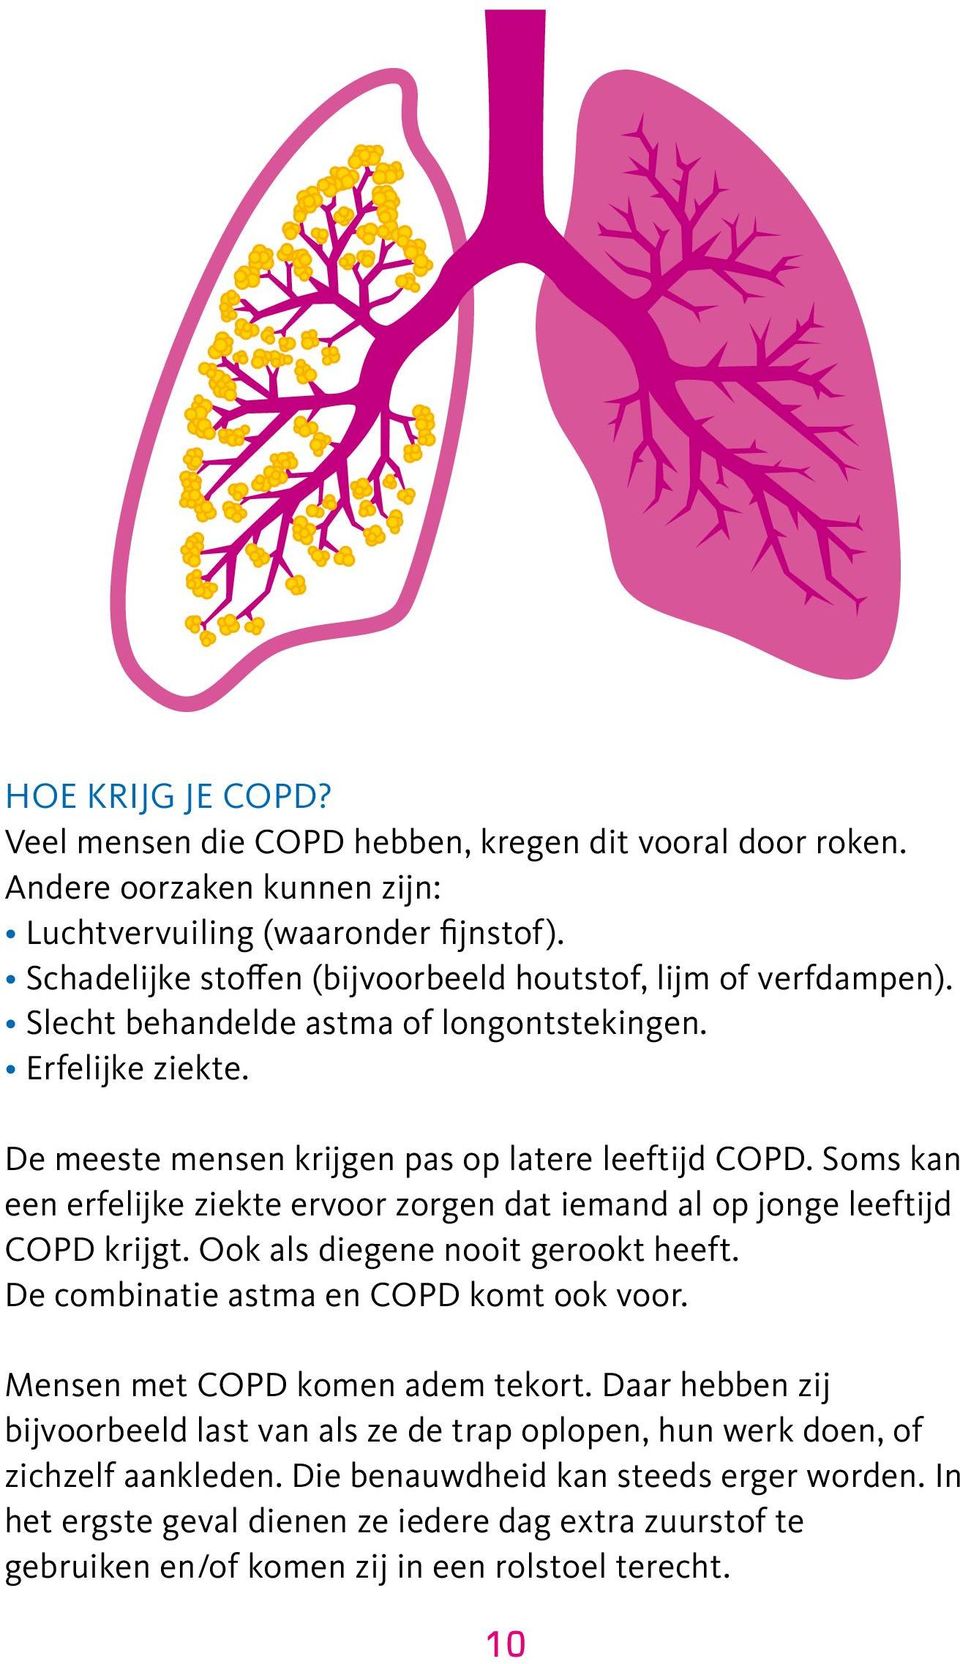 Soms kan een erfelijke ziekte ervoor zorgen dat iemand al op jonge leeftijd COPD krijgt. Ook als diegene nooit gerookt heeft. De combinatie astma en COPD komt ook voor.